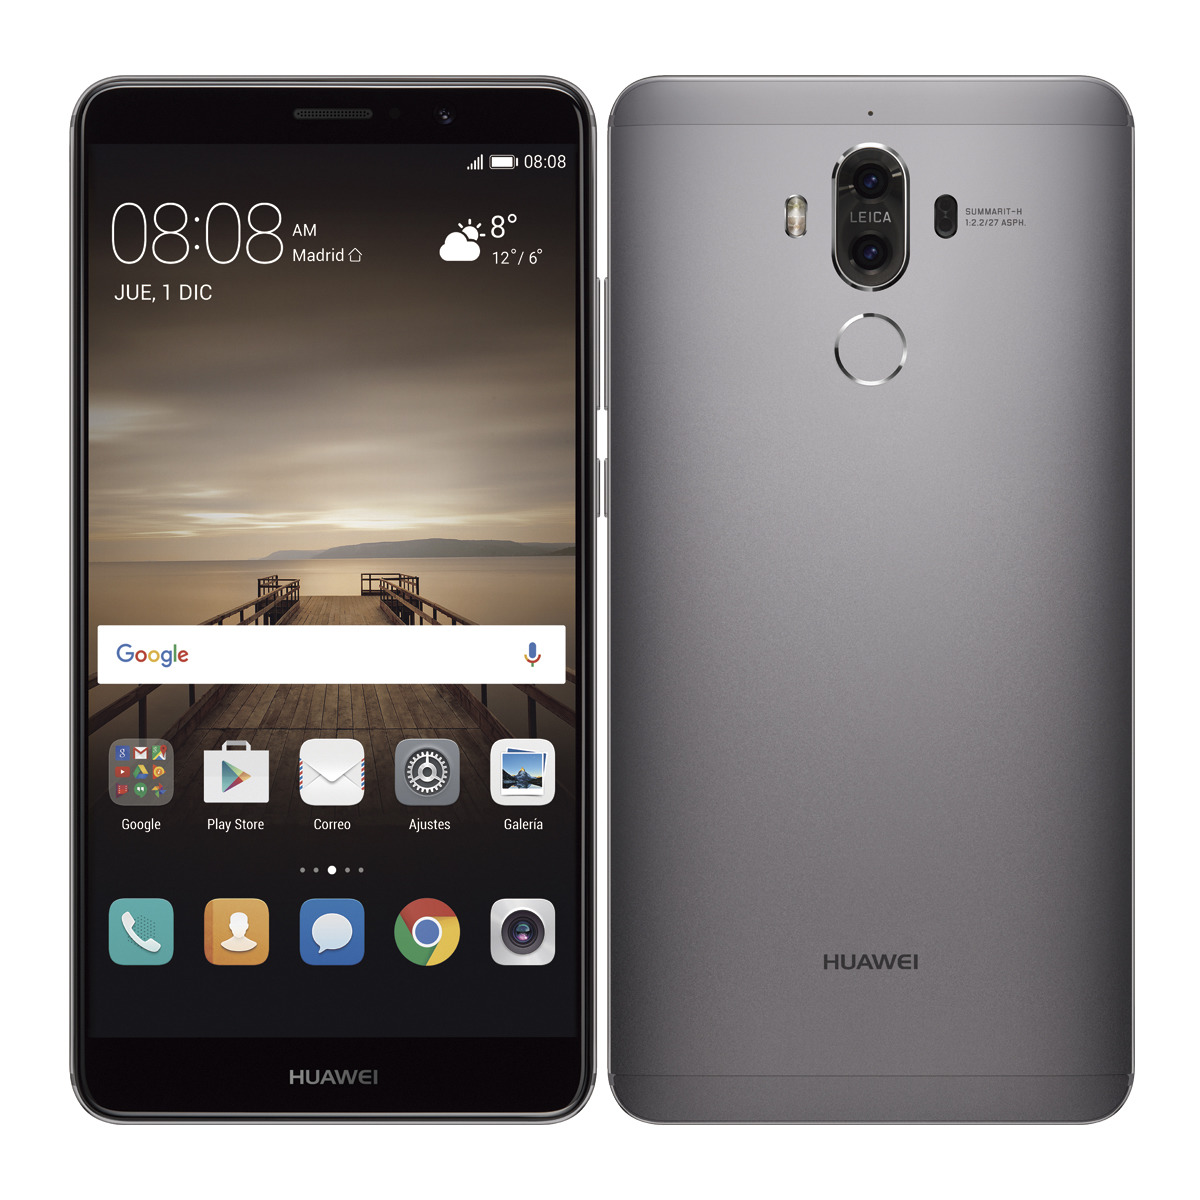 Huawei Mate 9 finalmente es anunciado